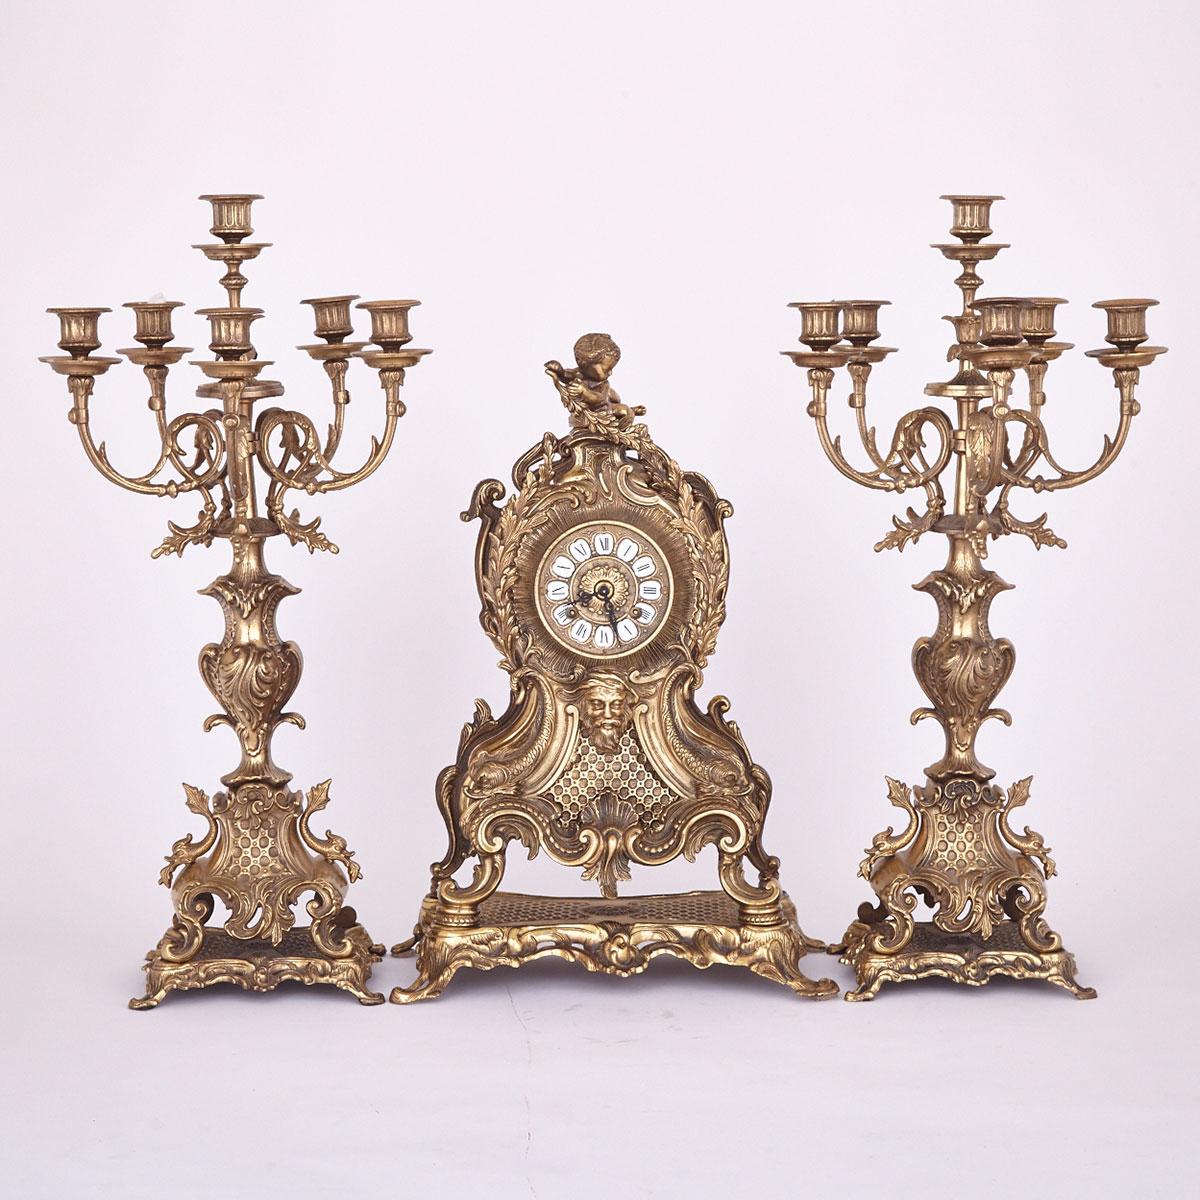 Three Piece Rococo Revival Clock Garniture, 2nd half, 20th century